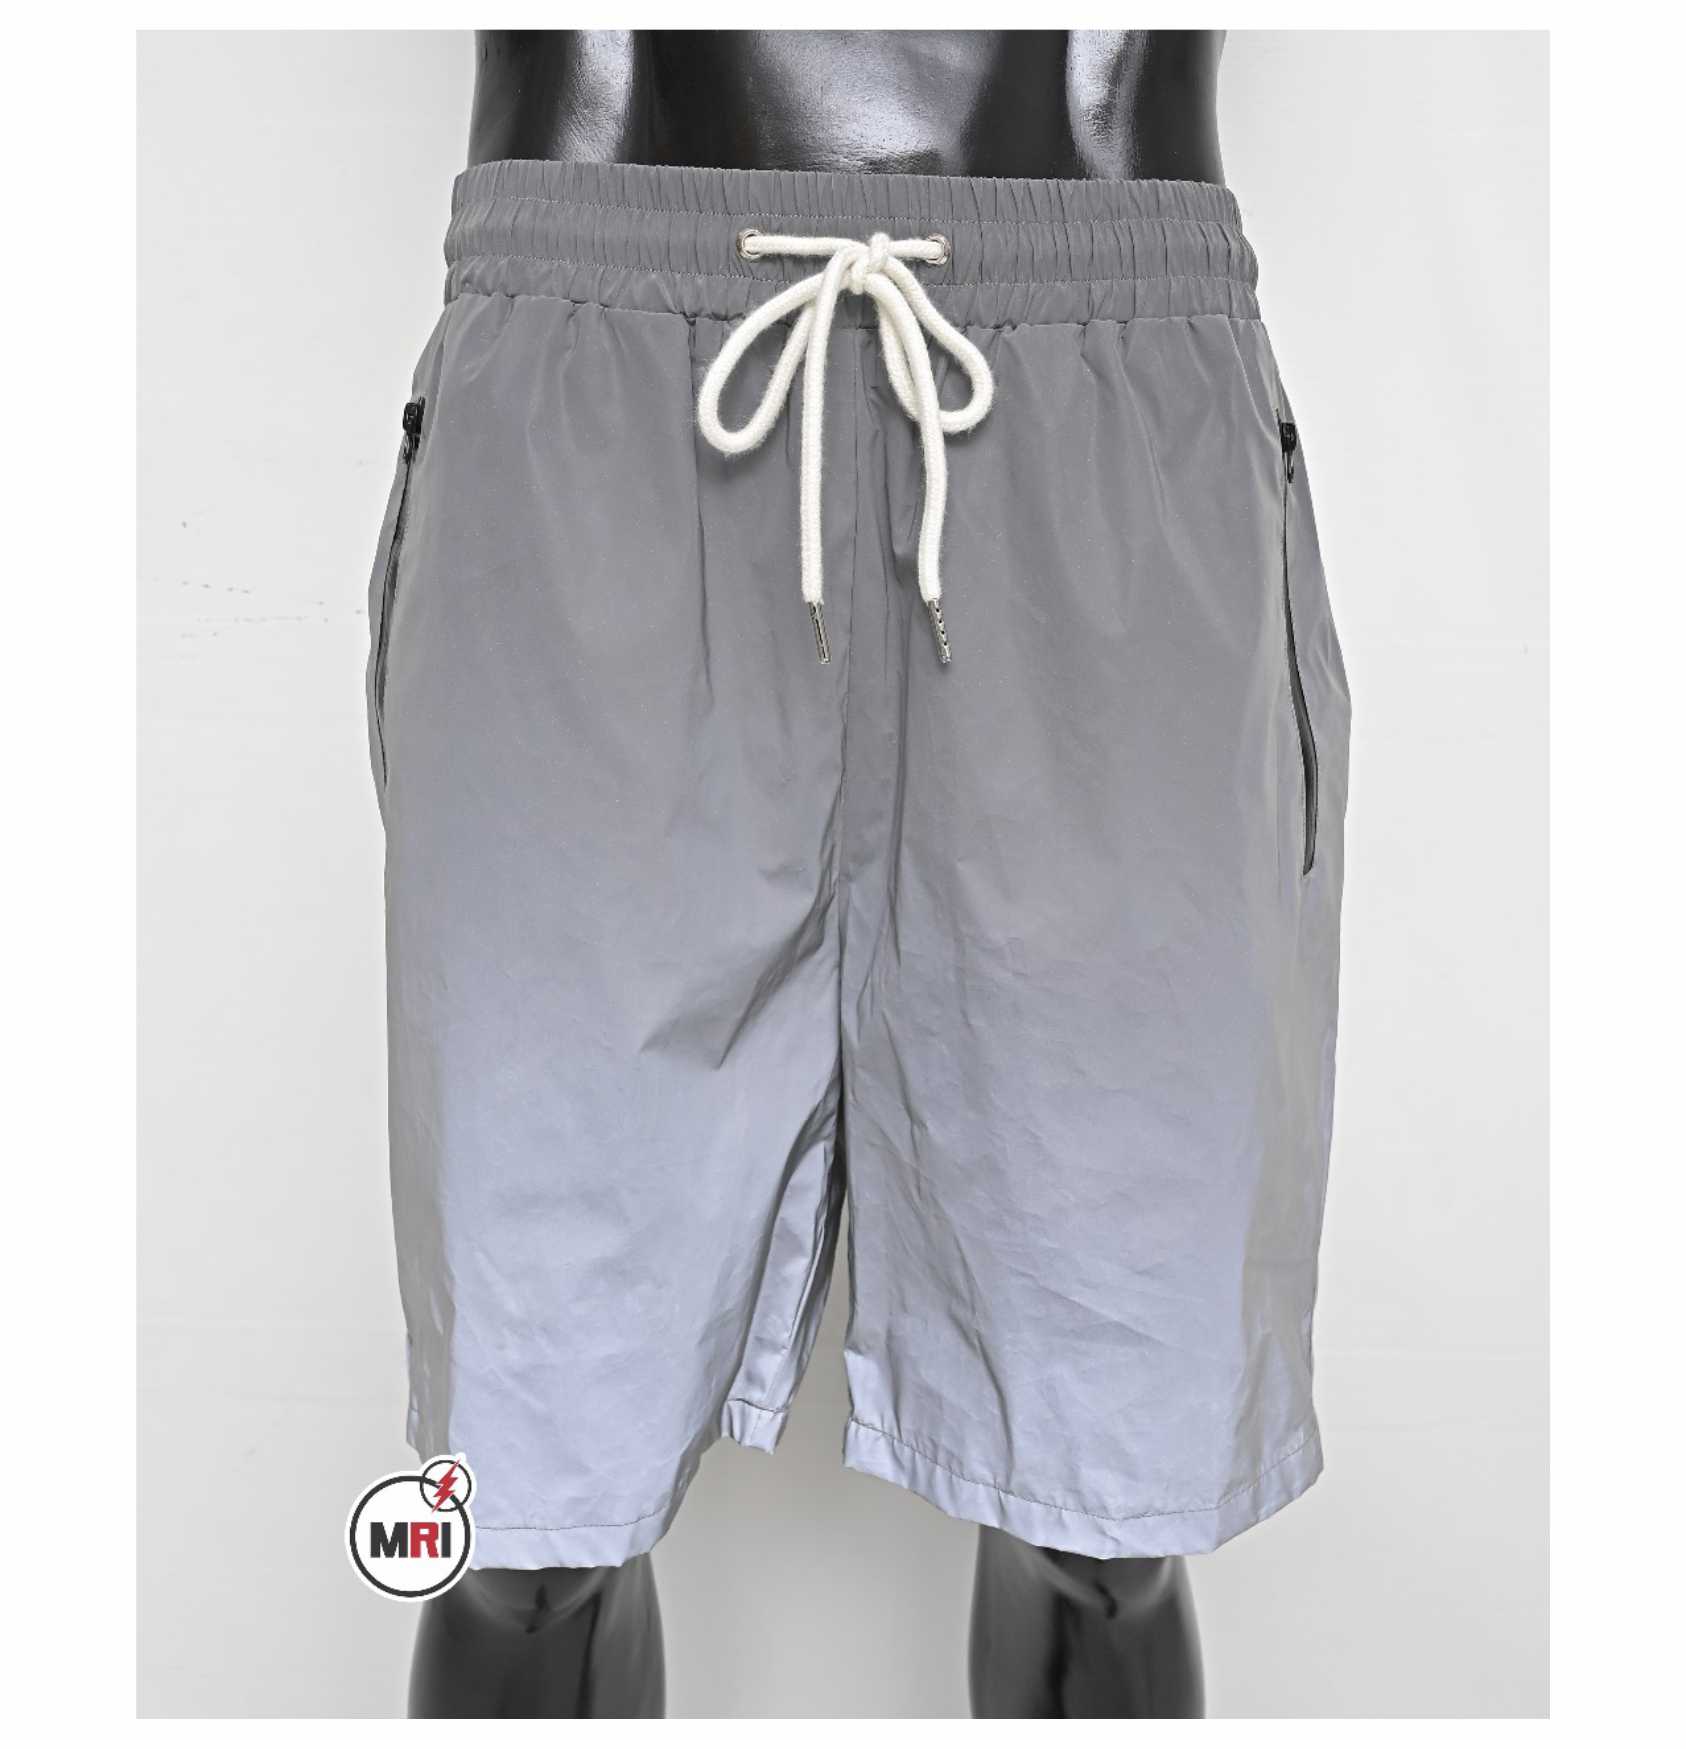 Unique Custom Reflected Summer Shorts